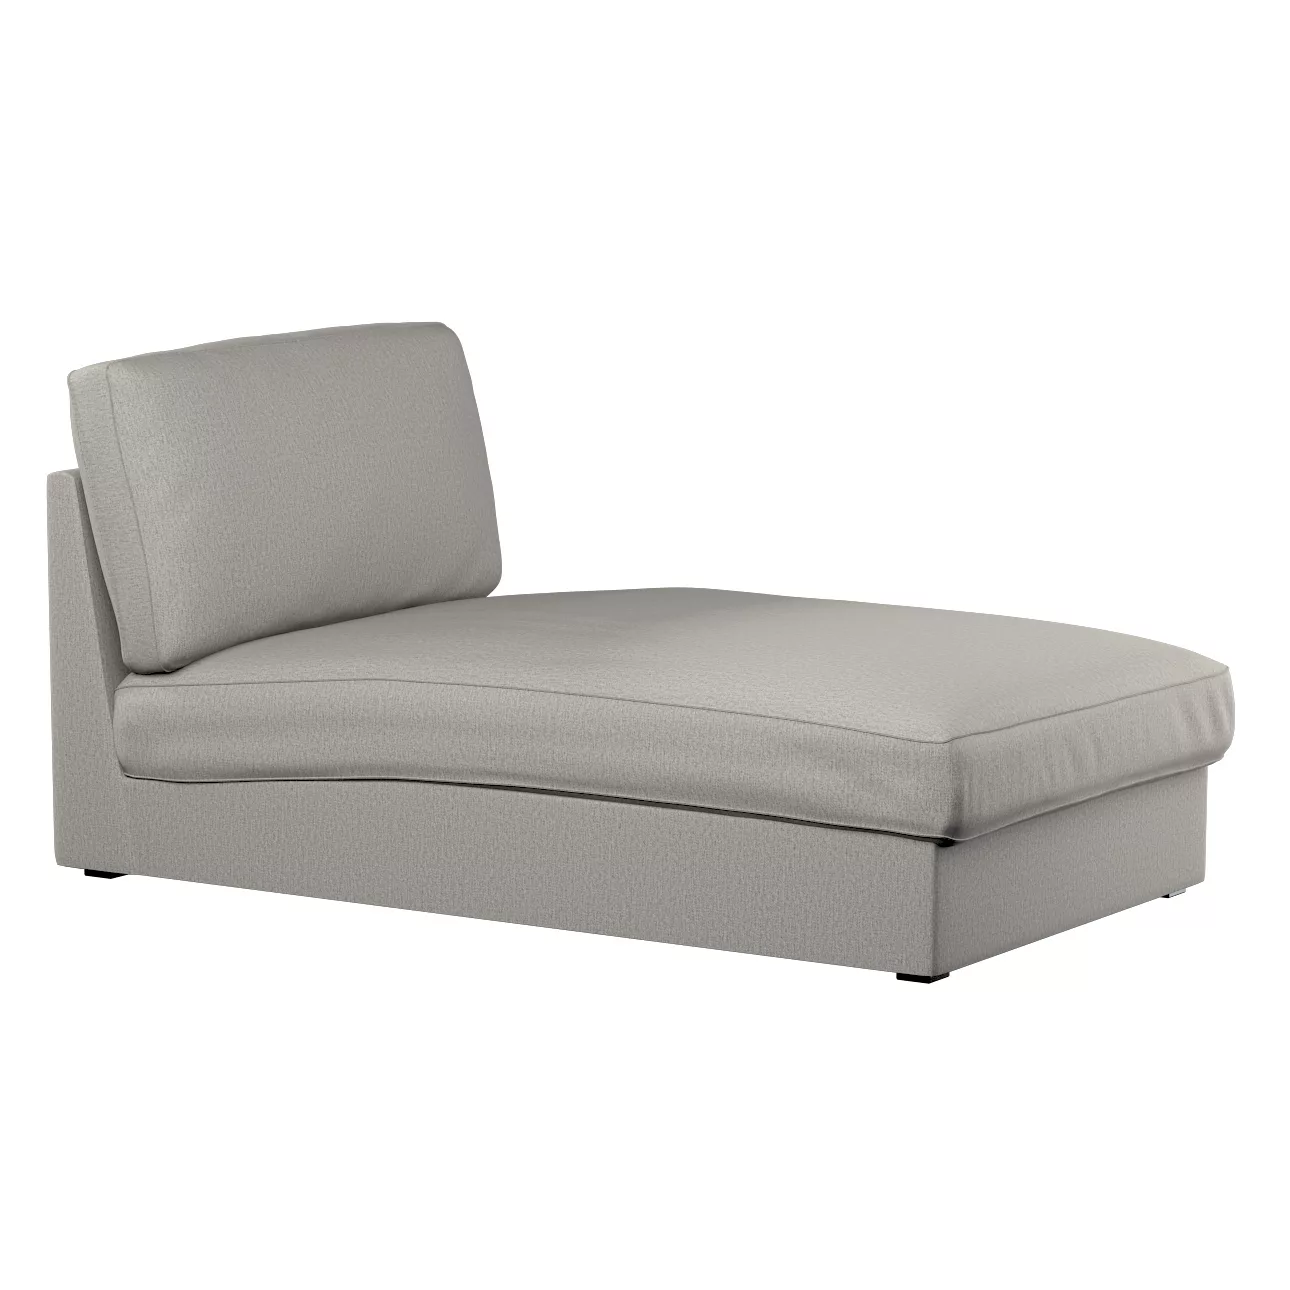 Bezug für Kivik Recamiere Sofa, grau, Bezug für Kivik Recamiere, Madrid (16 günstig online kaufen